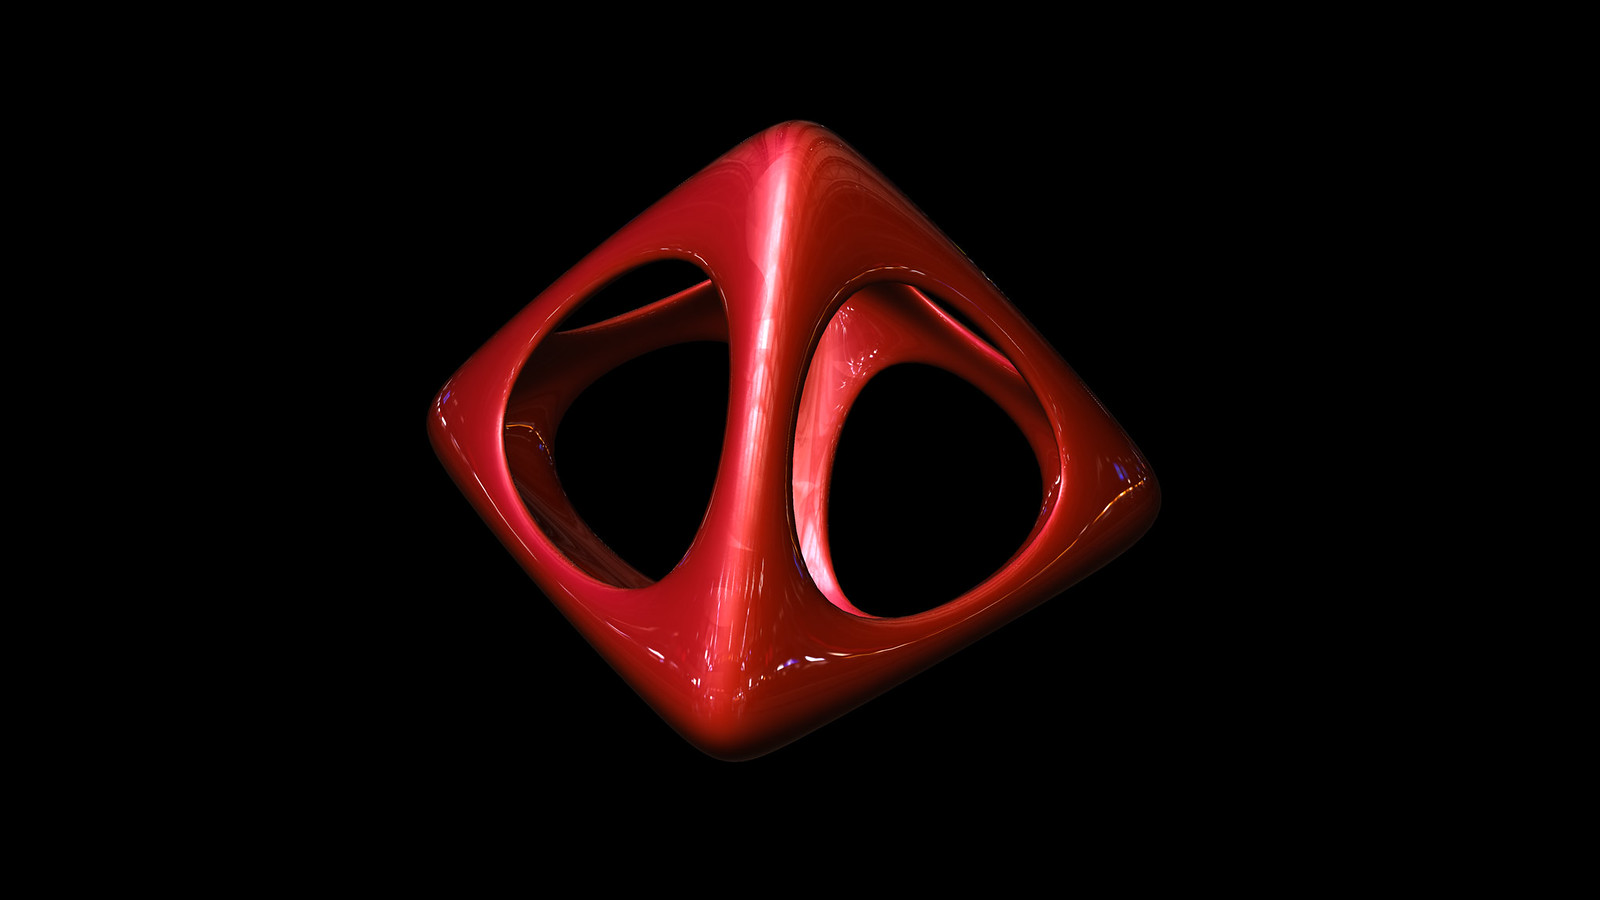 octahedron soft